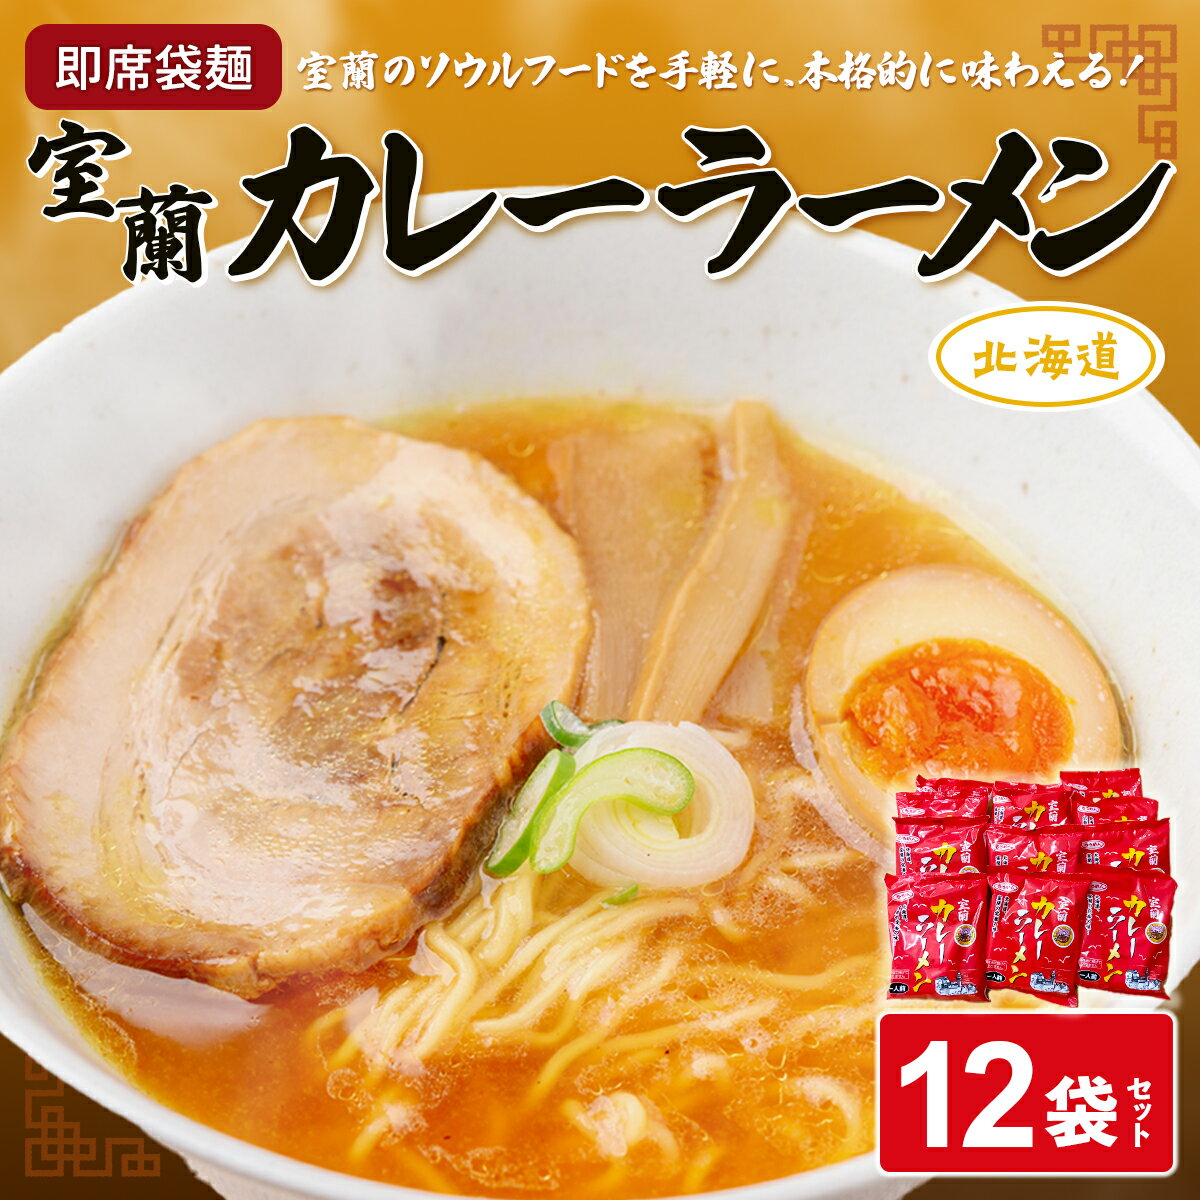 【ふるさと納税】即席袋麺「室蘭カレーラーメン」12袋セット 